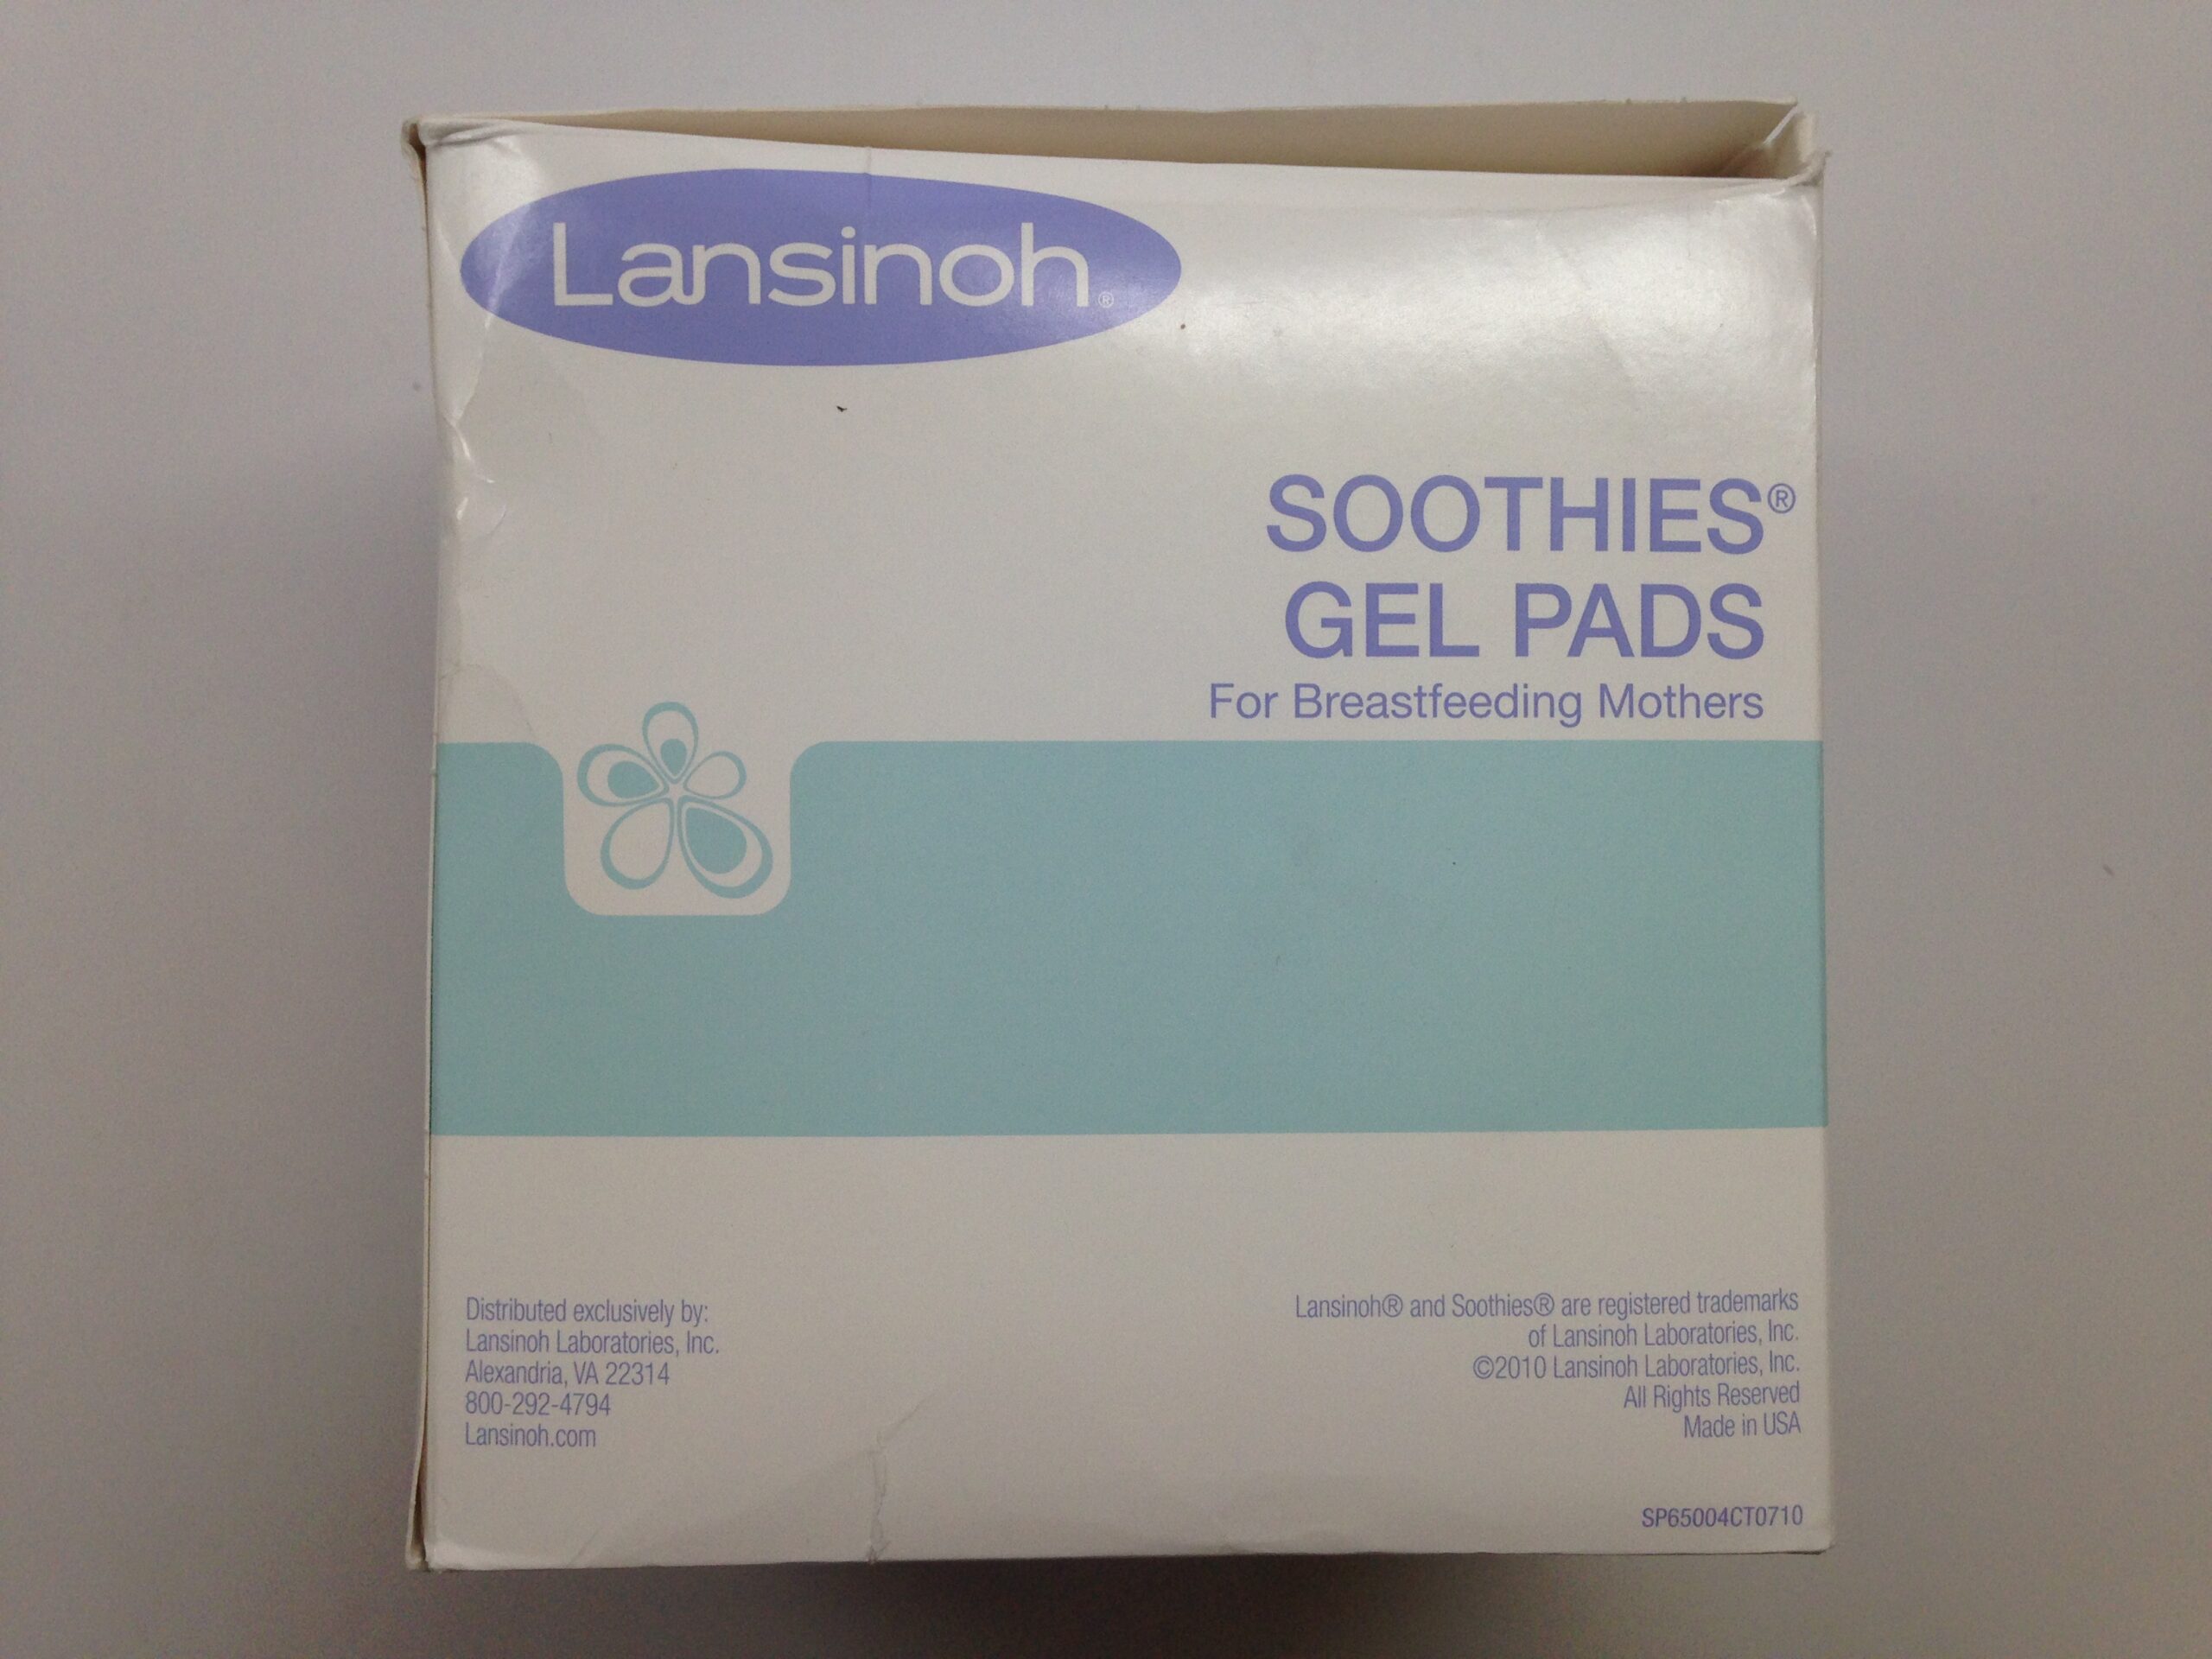 Lansinoh Soothies Gel Pads (Pack of 2)